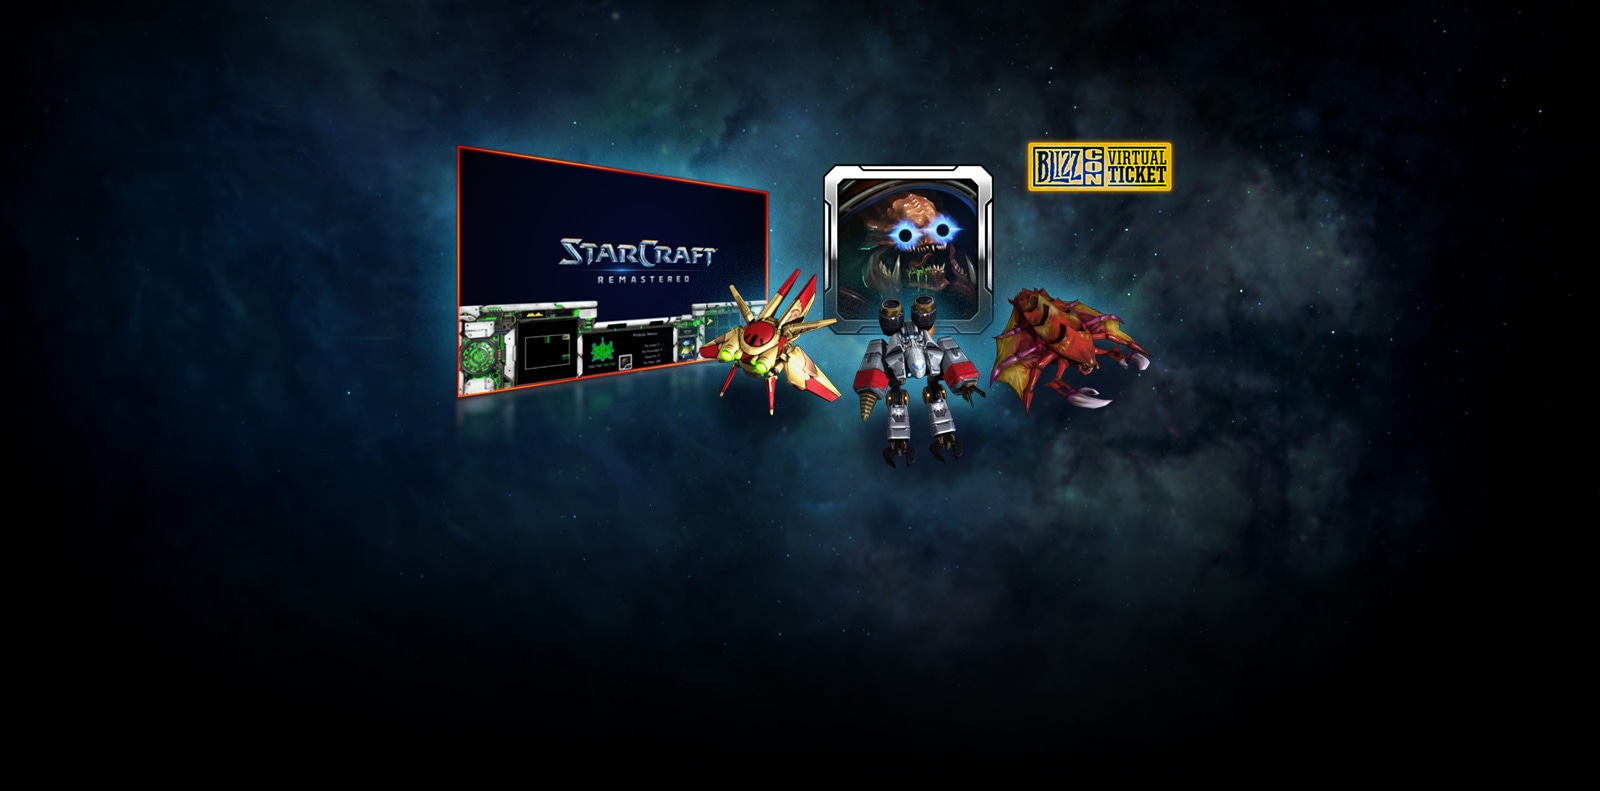 Mamy dla was blizzconowe gadżety cyfrowe w grach StarCraft